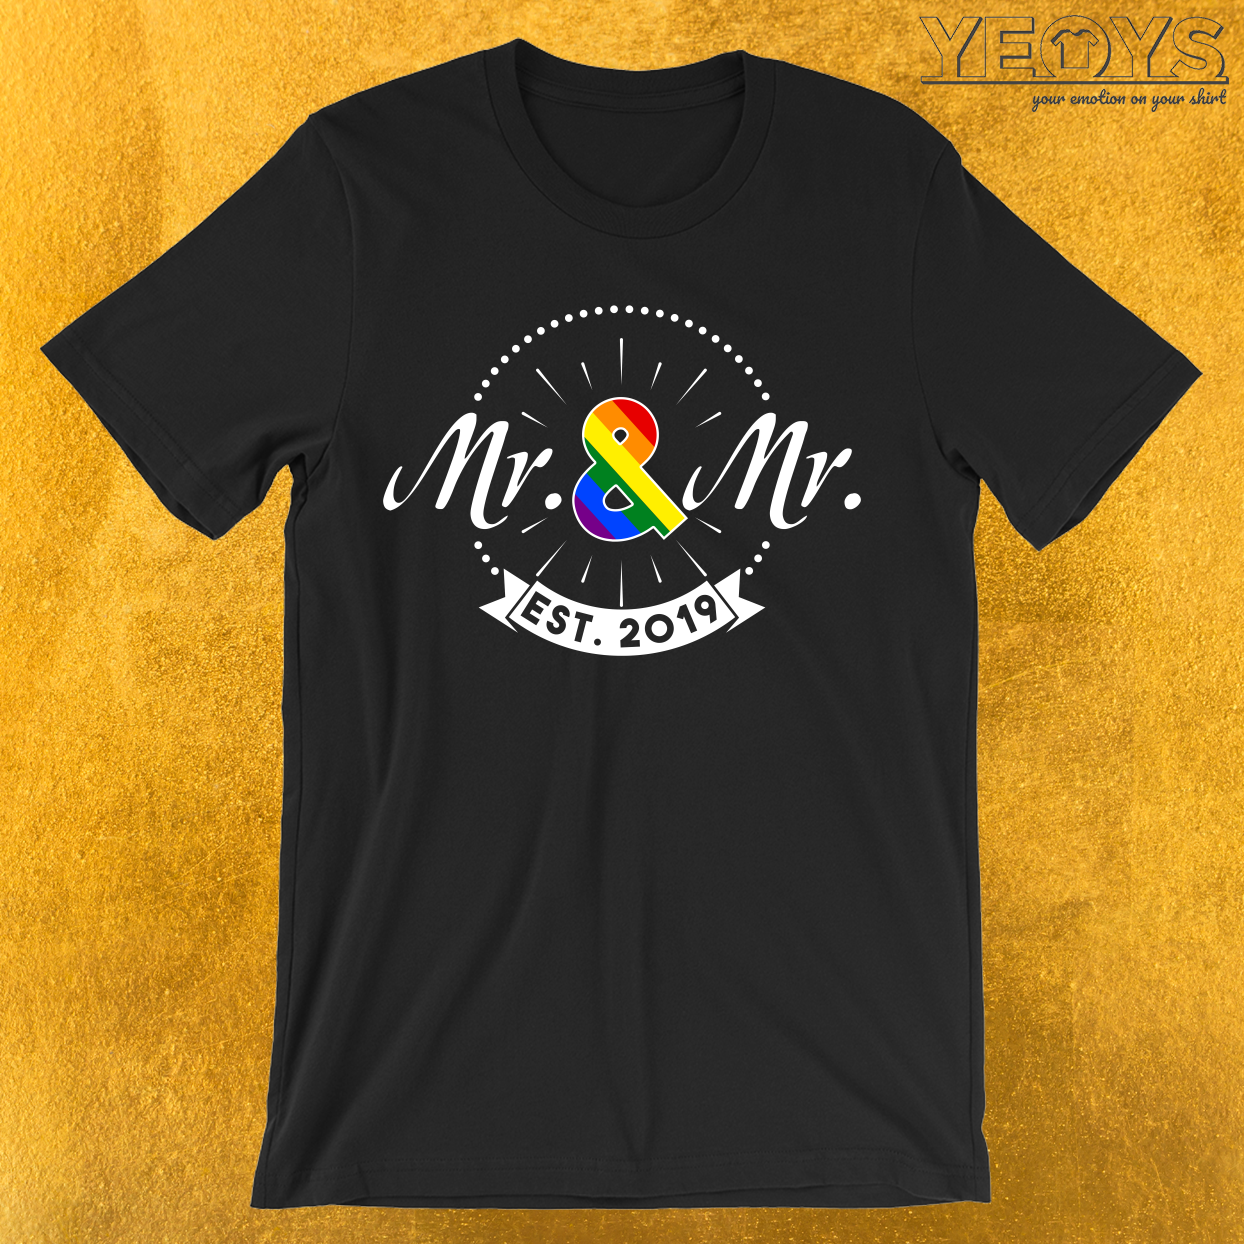 Mr. & Mr. est. 2019 T-Shirt